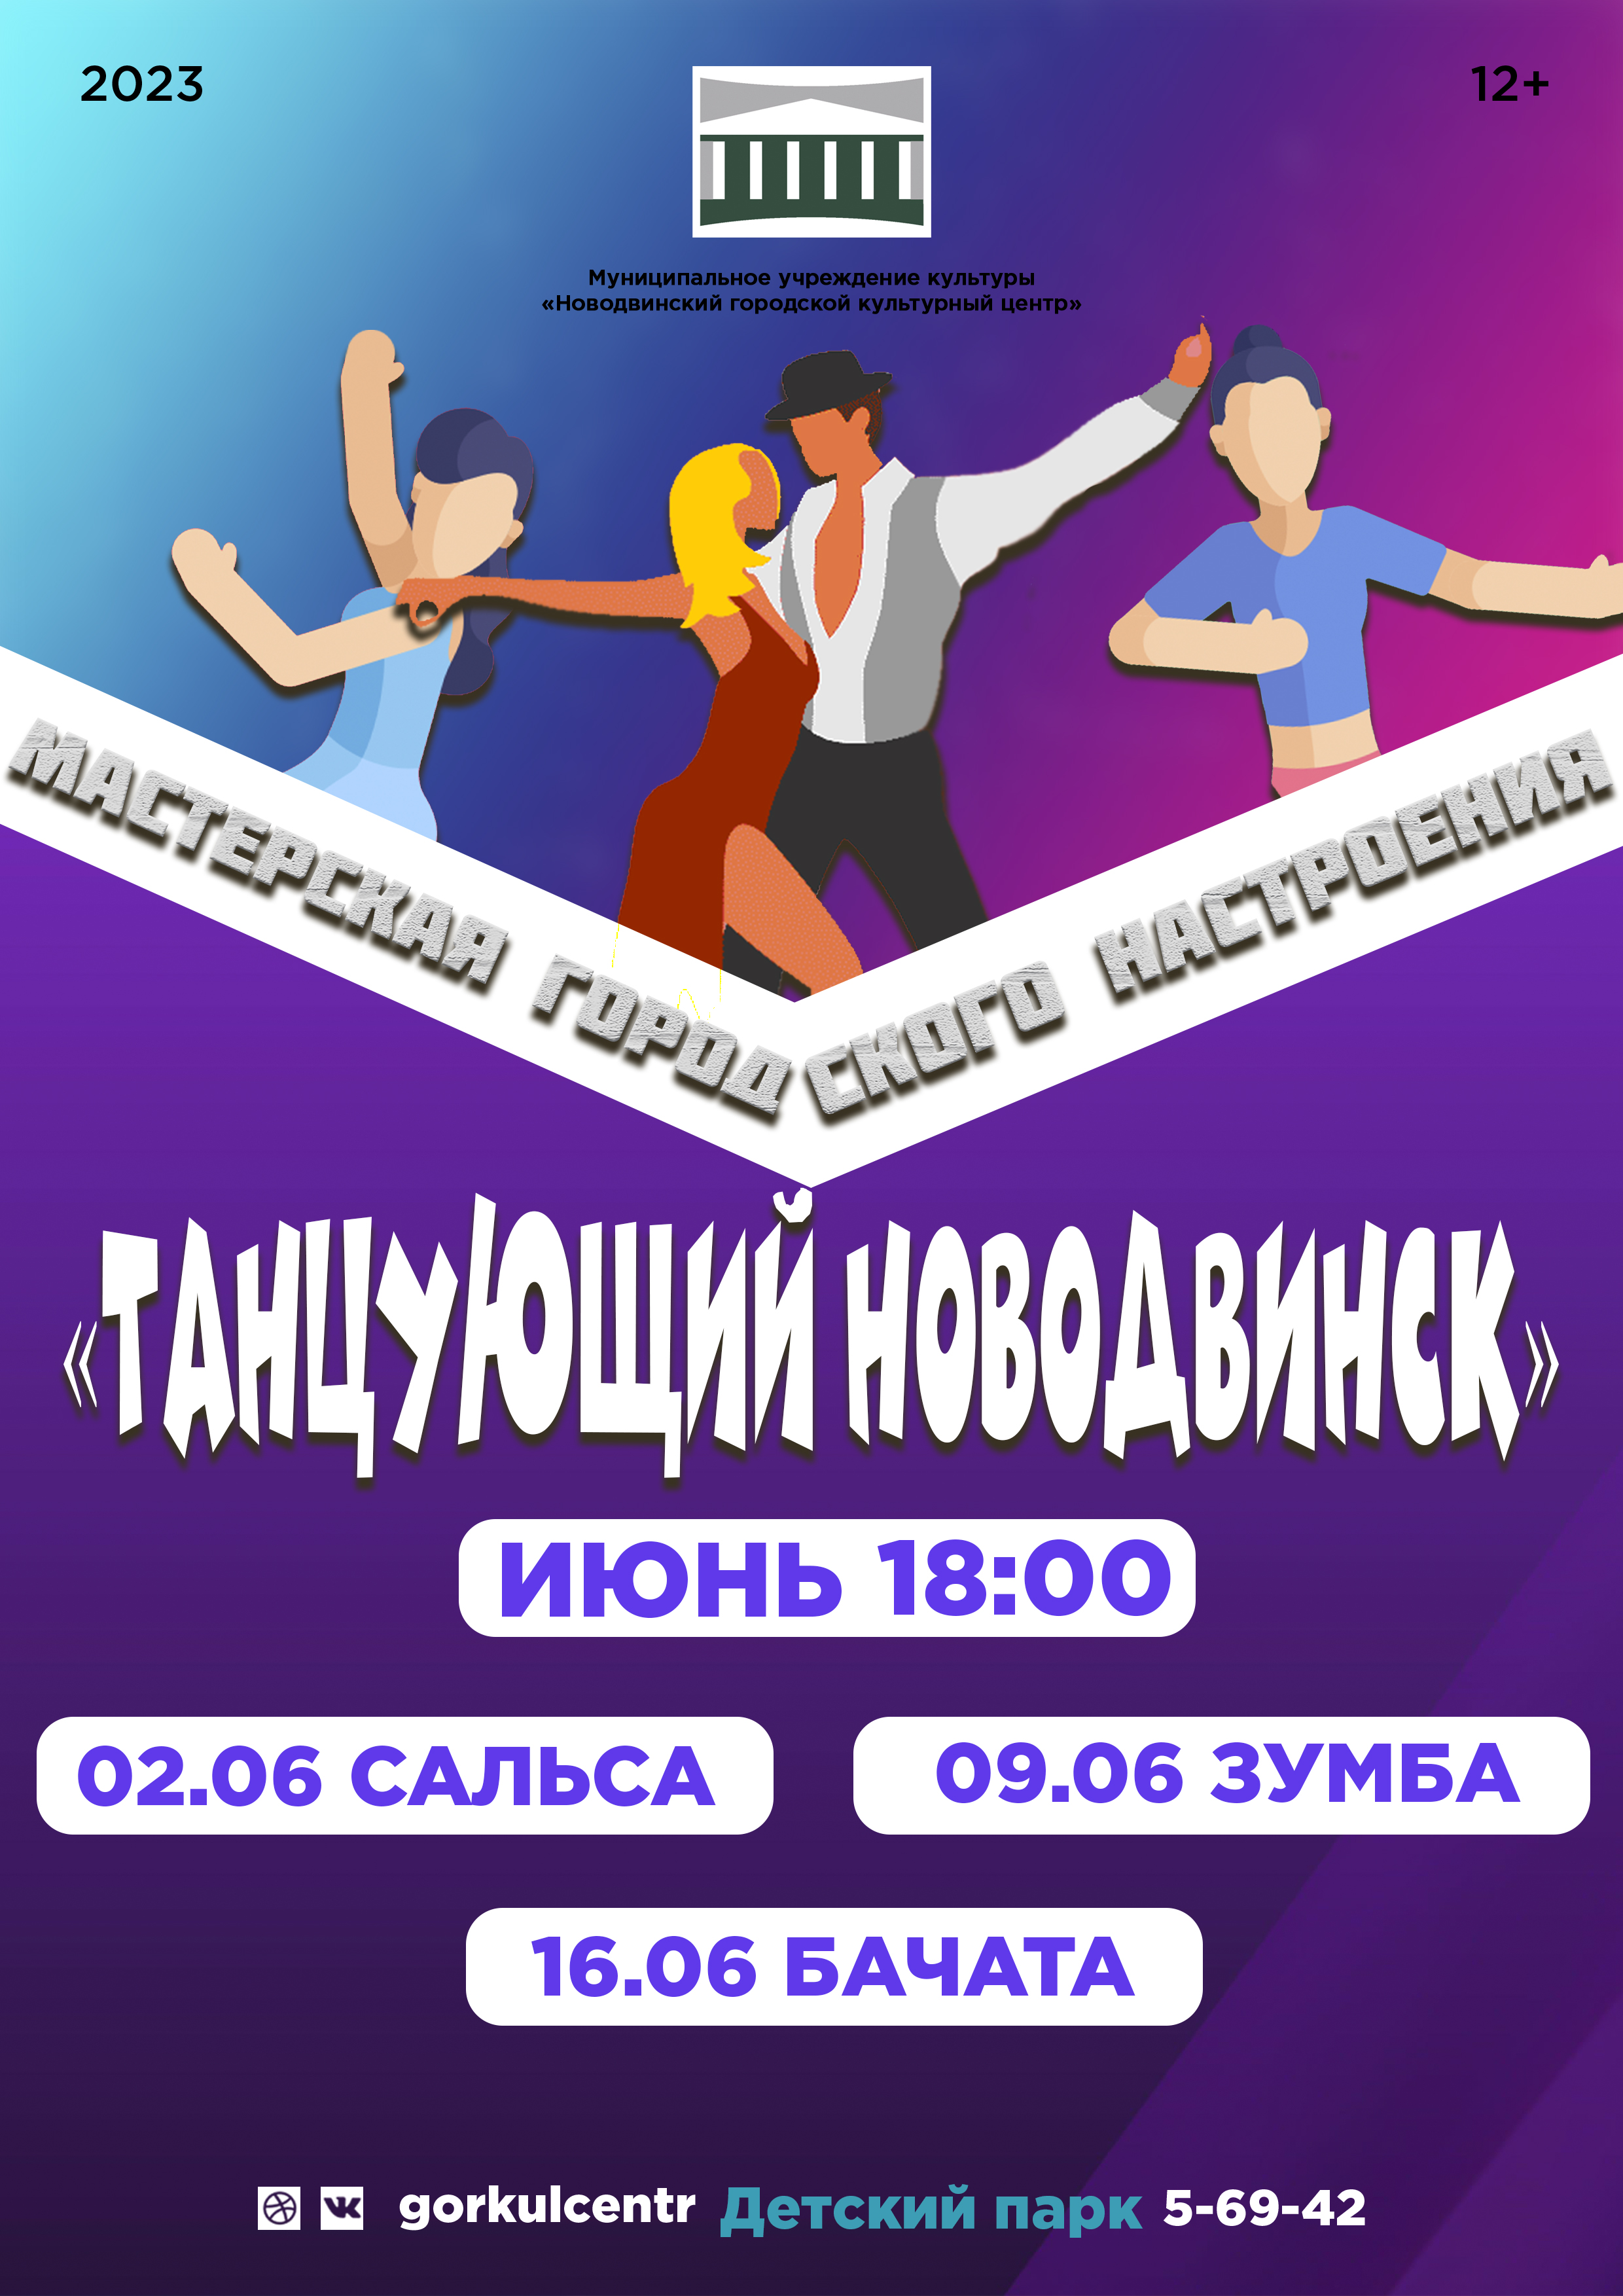 Сегодня в 18:00 мы ждем вас в Детском парке за Новодвинским городским культурным центром!